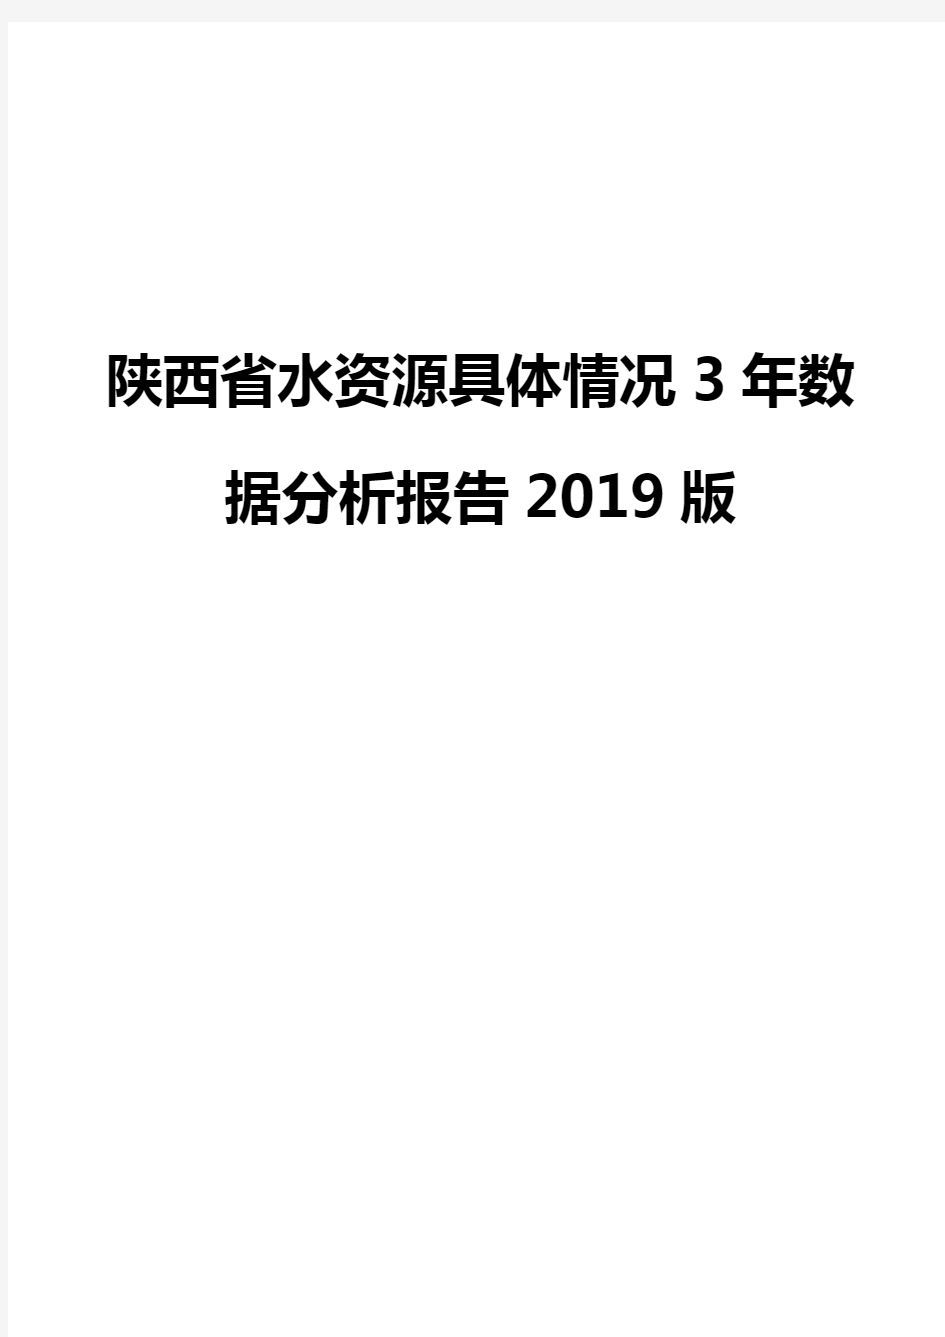 陕西省水资源具体情况3年数据分析报告2019版